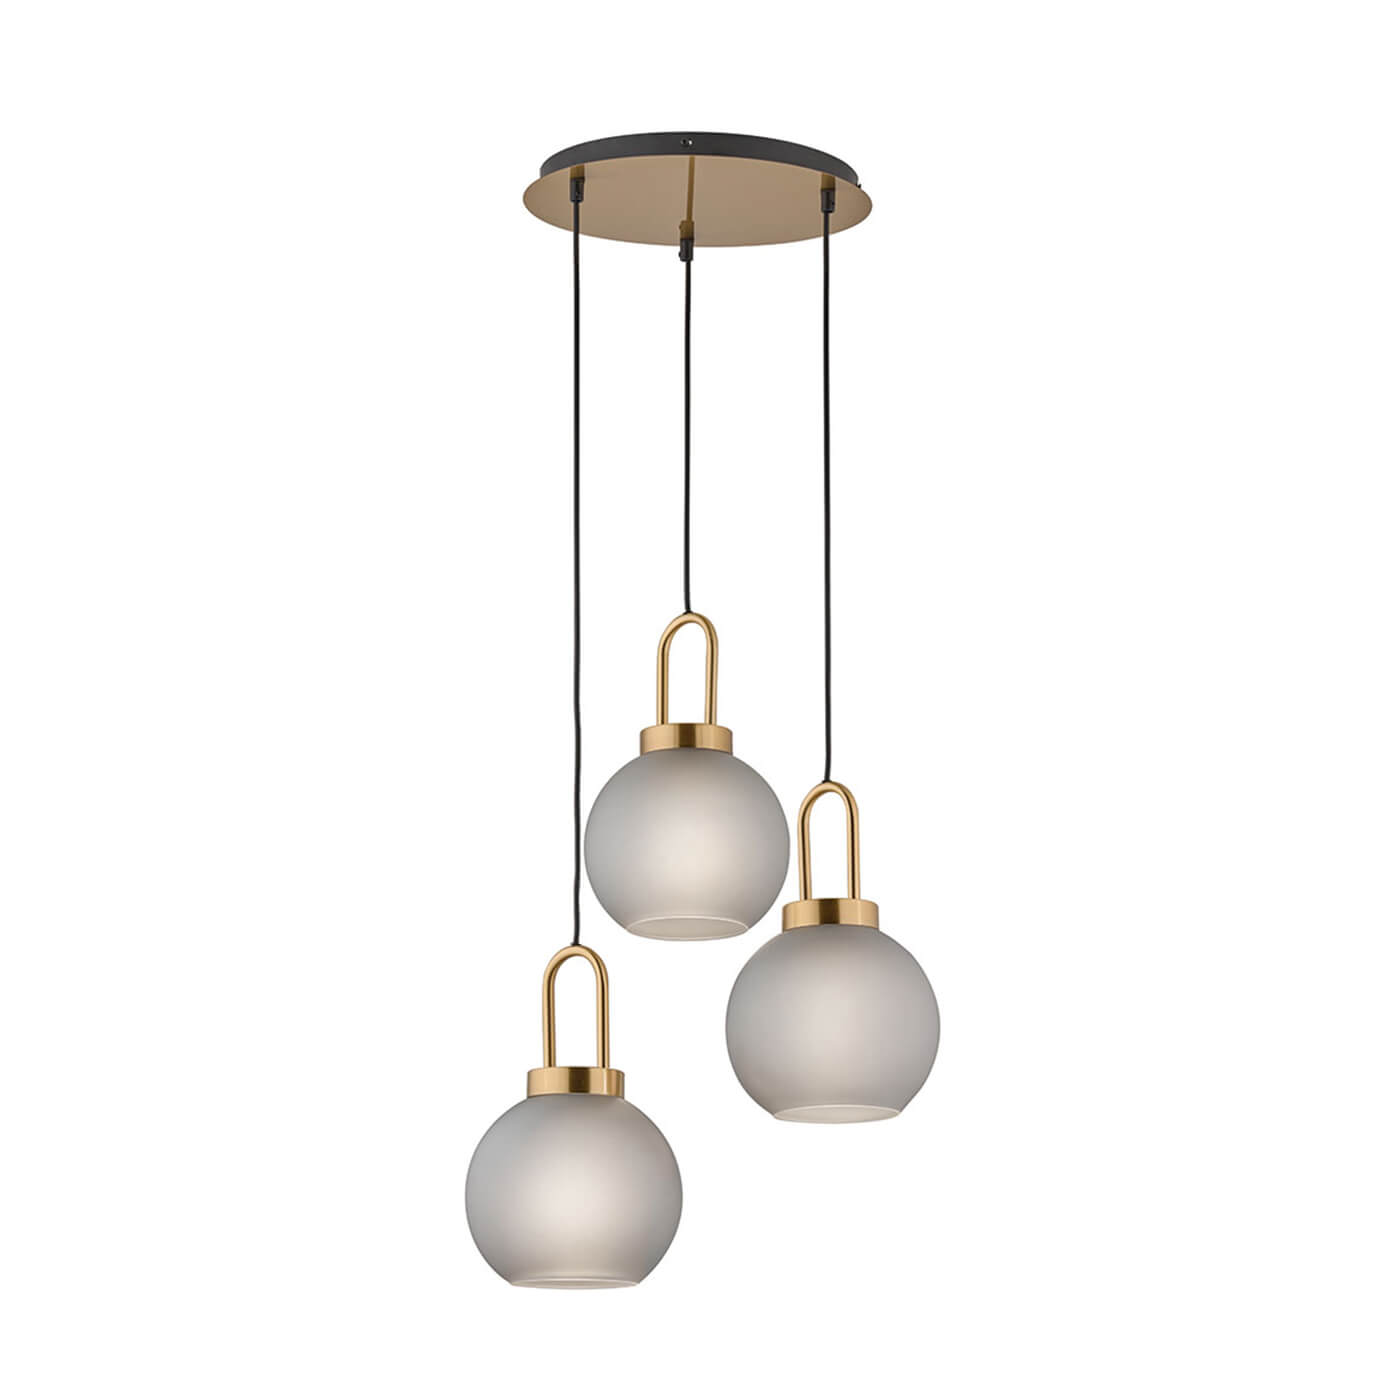 Cauti o lampa suspendata DORIA S3S din metal si sticla pentru living, design modern, pentru living, dining sau dormitor din colectia de lustre si candelabre Domicilio?